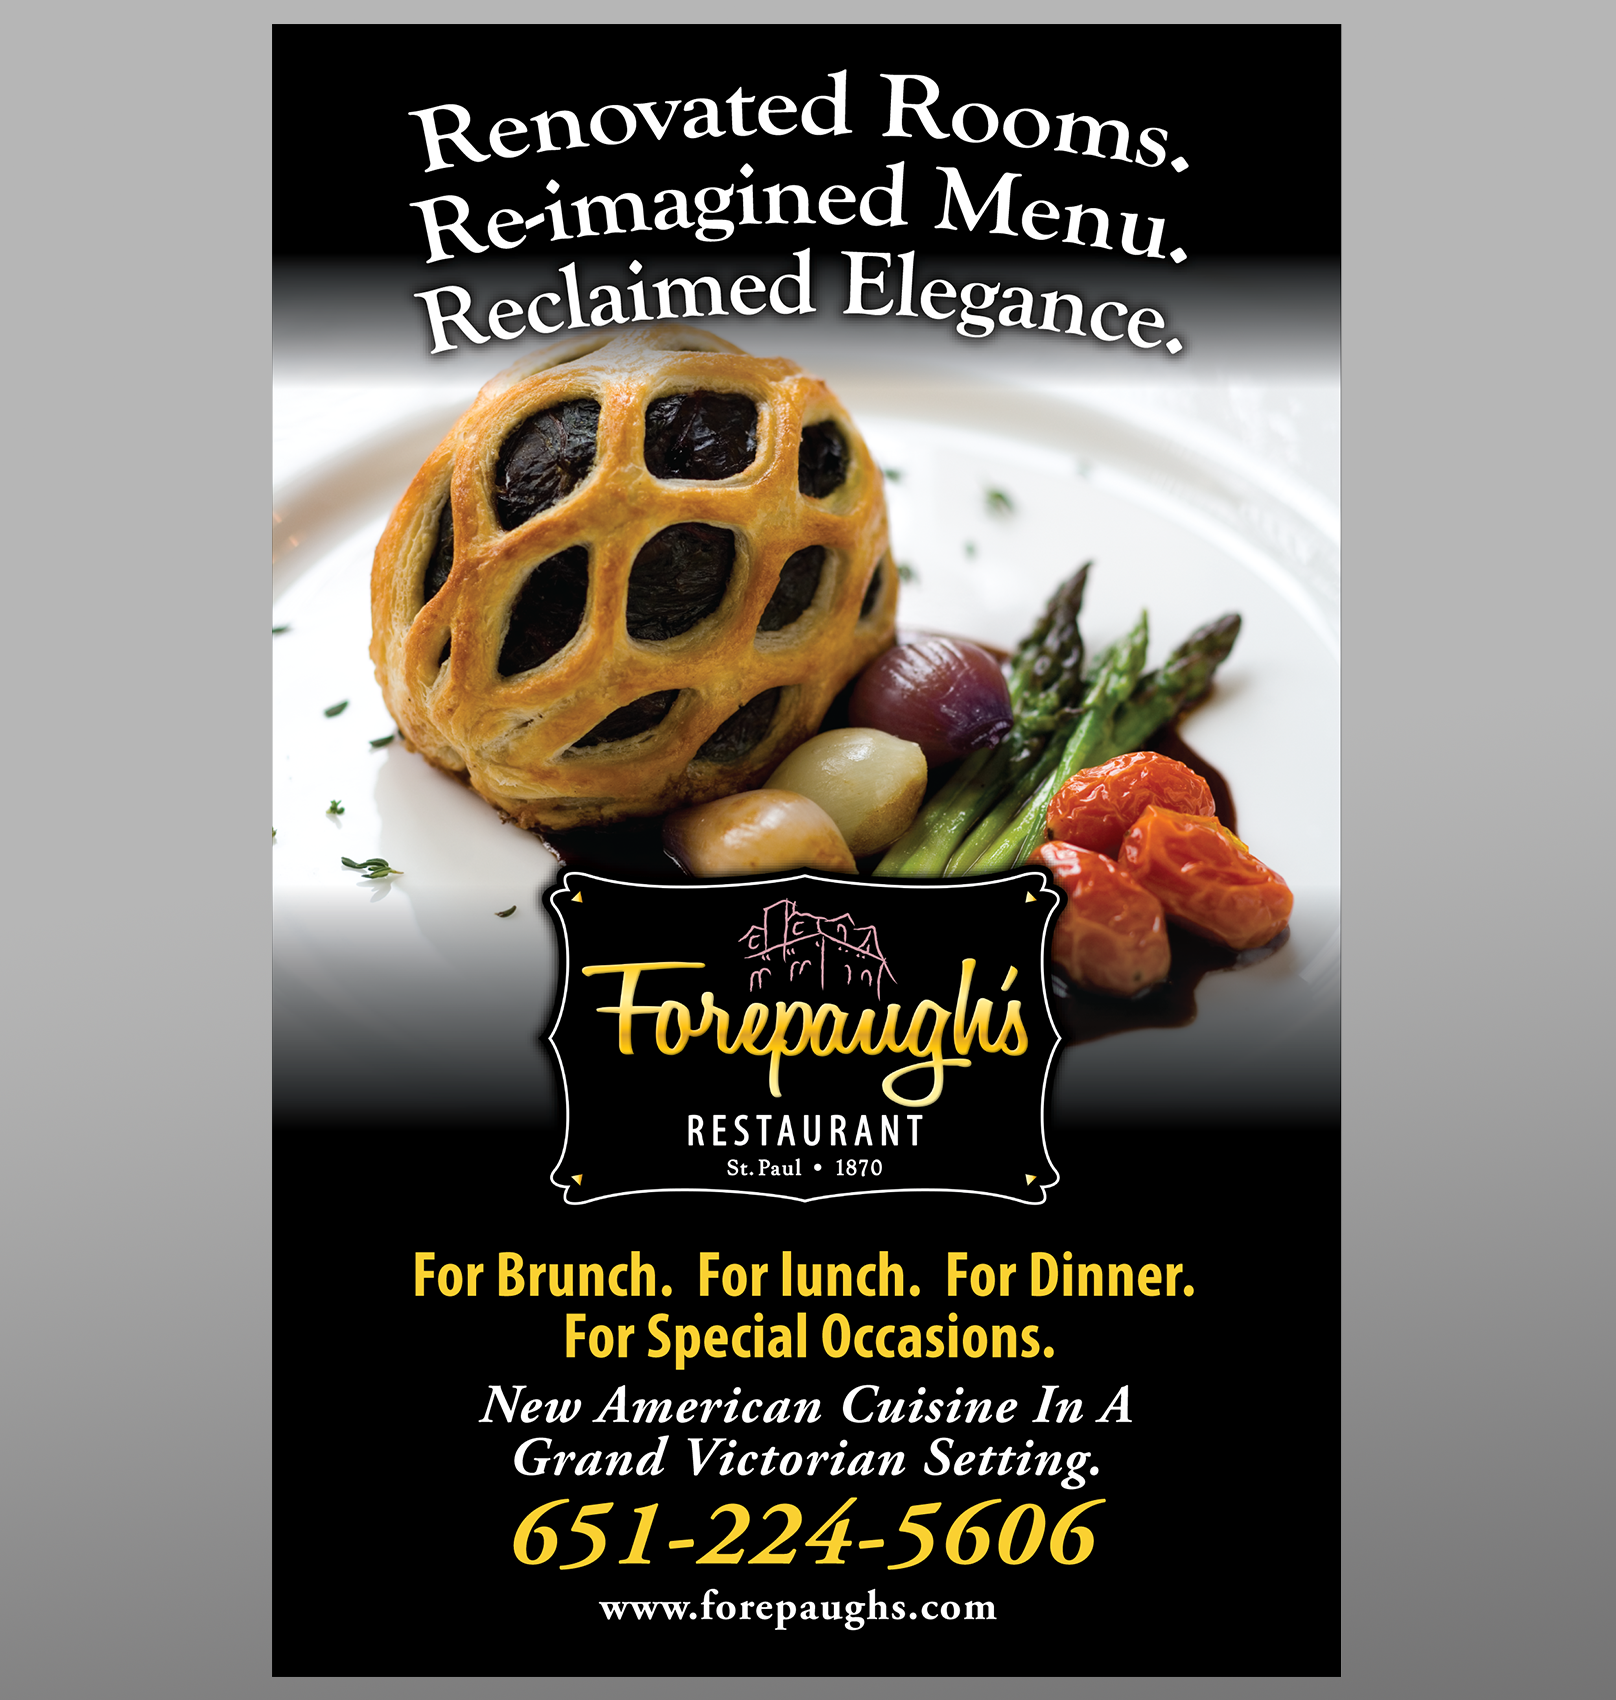 Forepaughs Restaurant Ad - Shawn Eiken